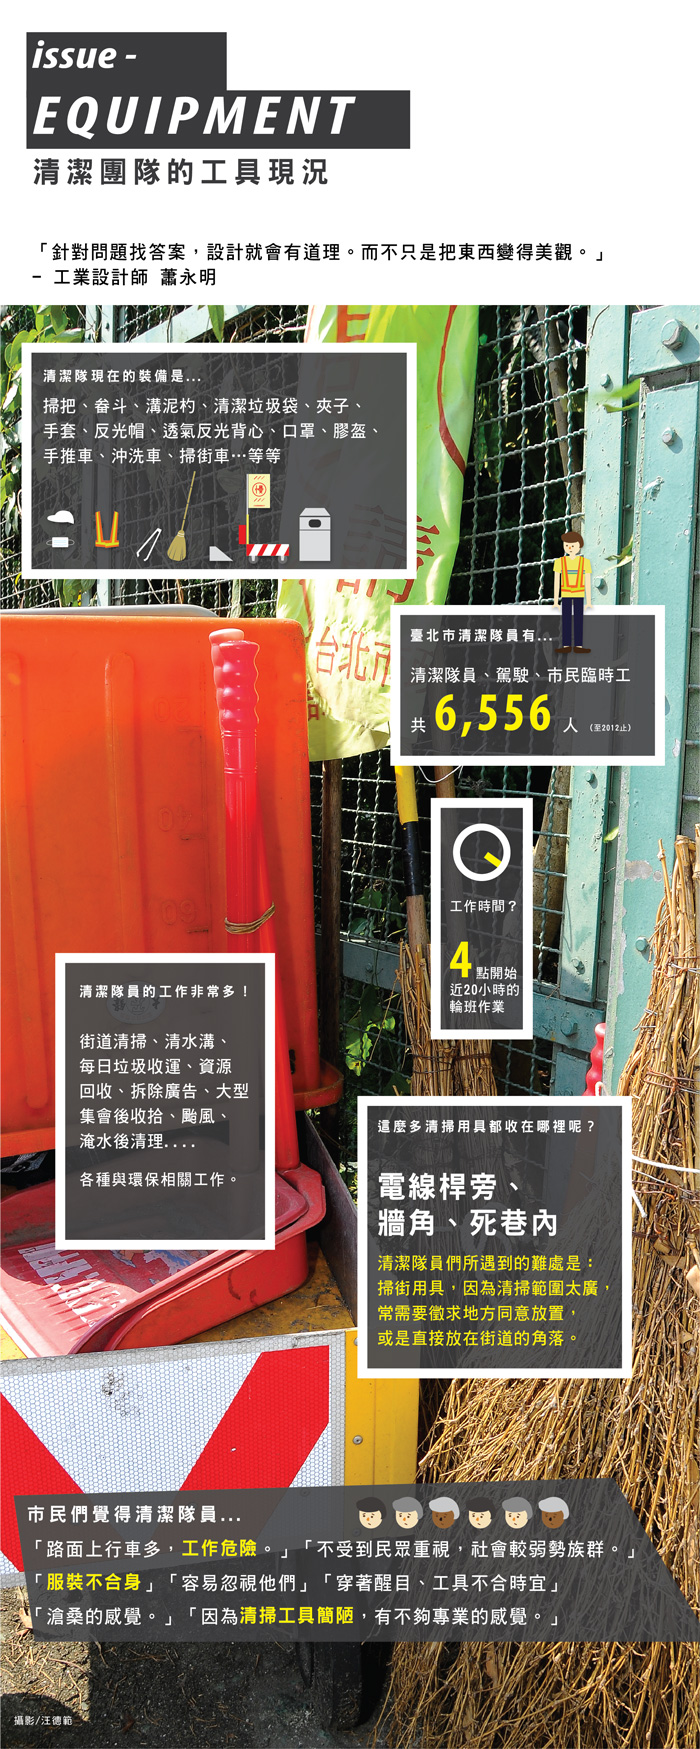 都市酵母, 水越設計, AGUA Design, CITY YEAST, 臺北市清潔隊裝備提升, 世界設計之都, Taipei, Taiwan